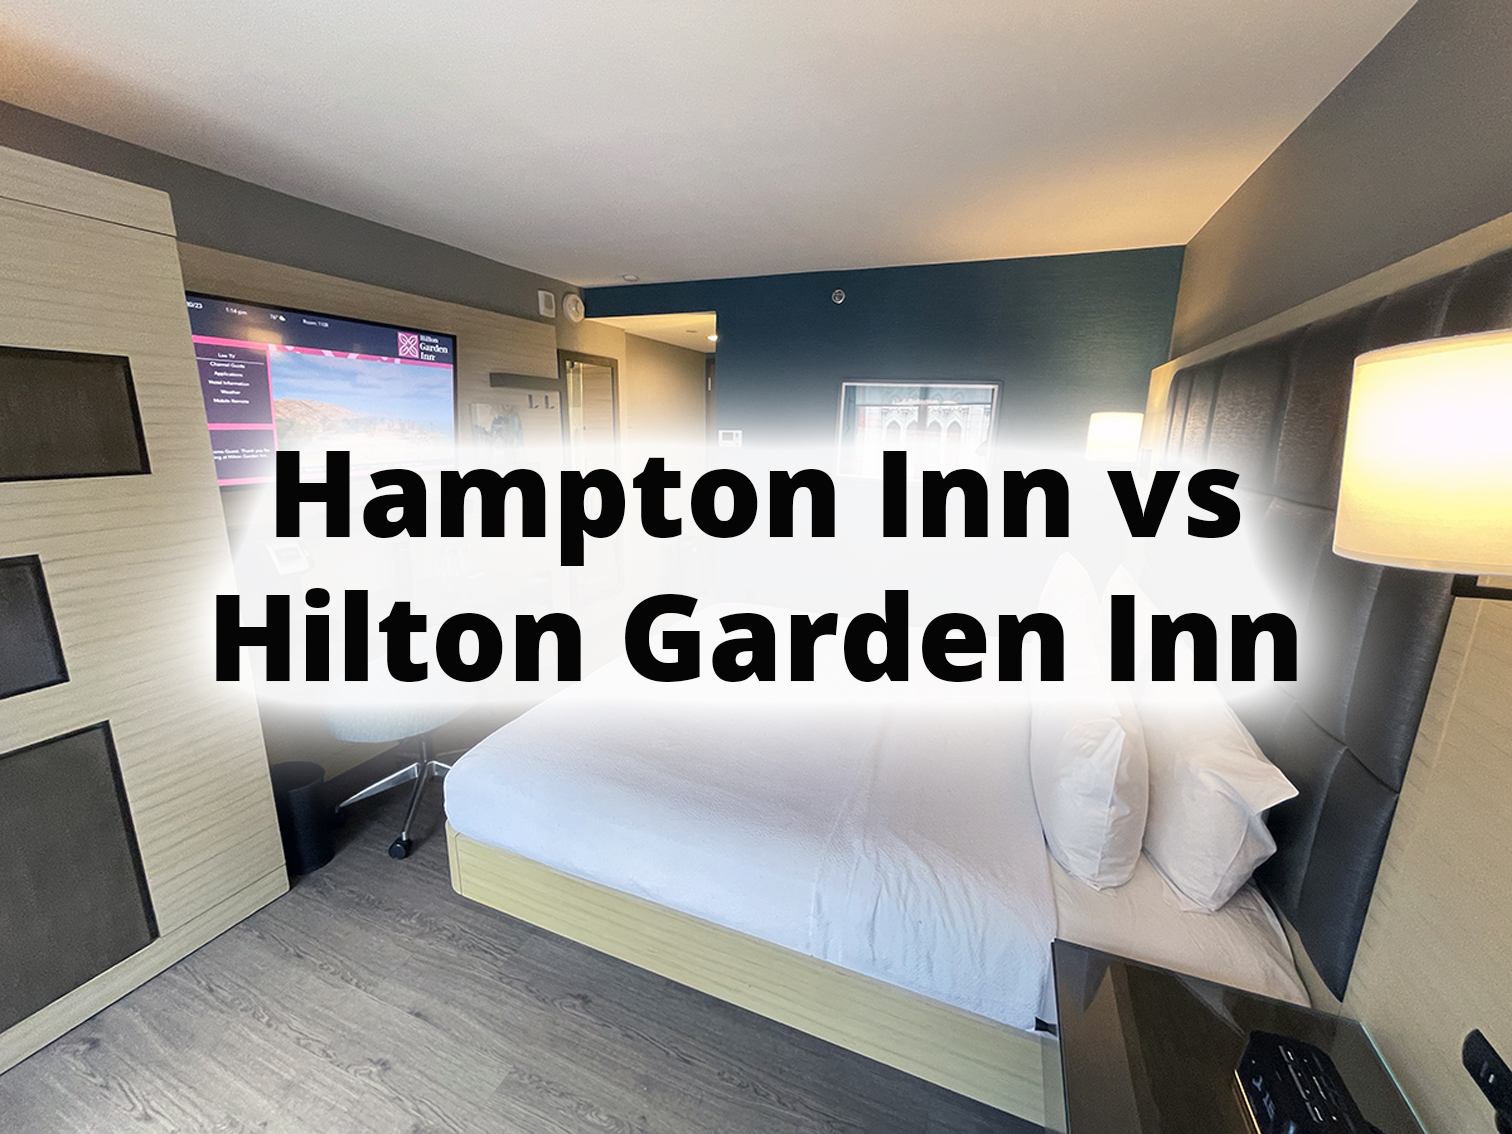 Hampton Inn vs Hilton Garden Inn - Which Is Better